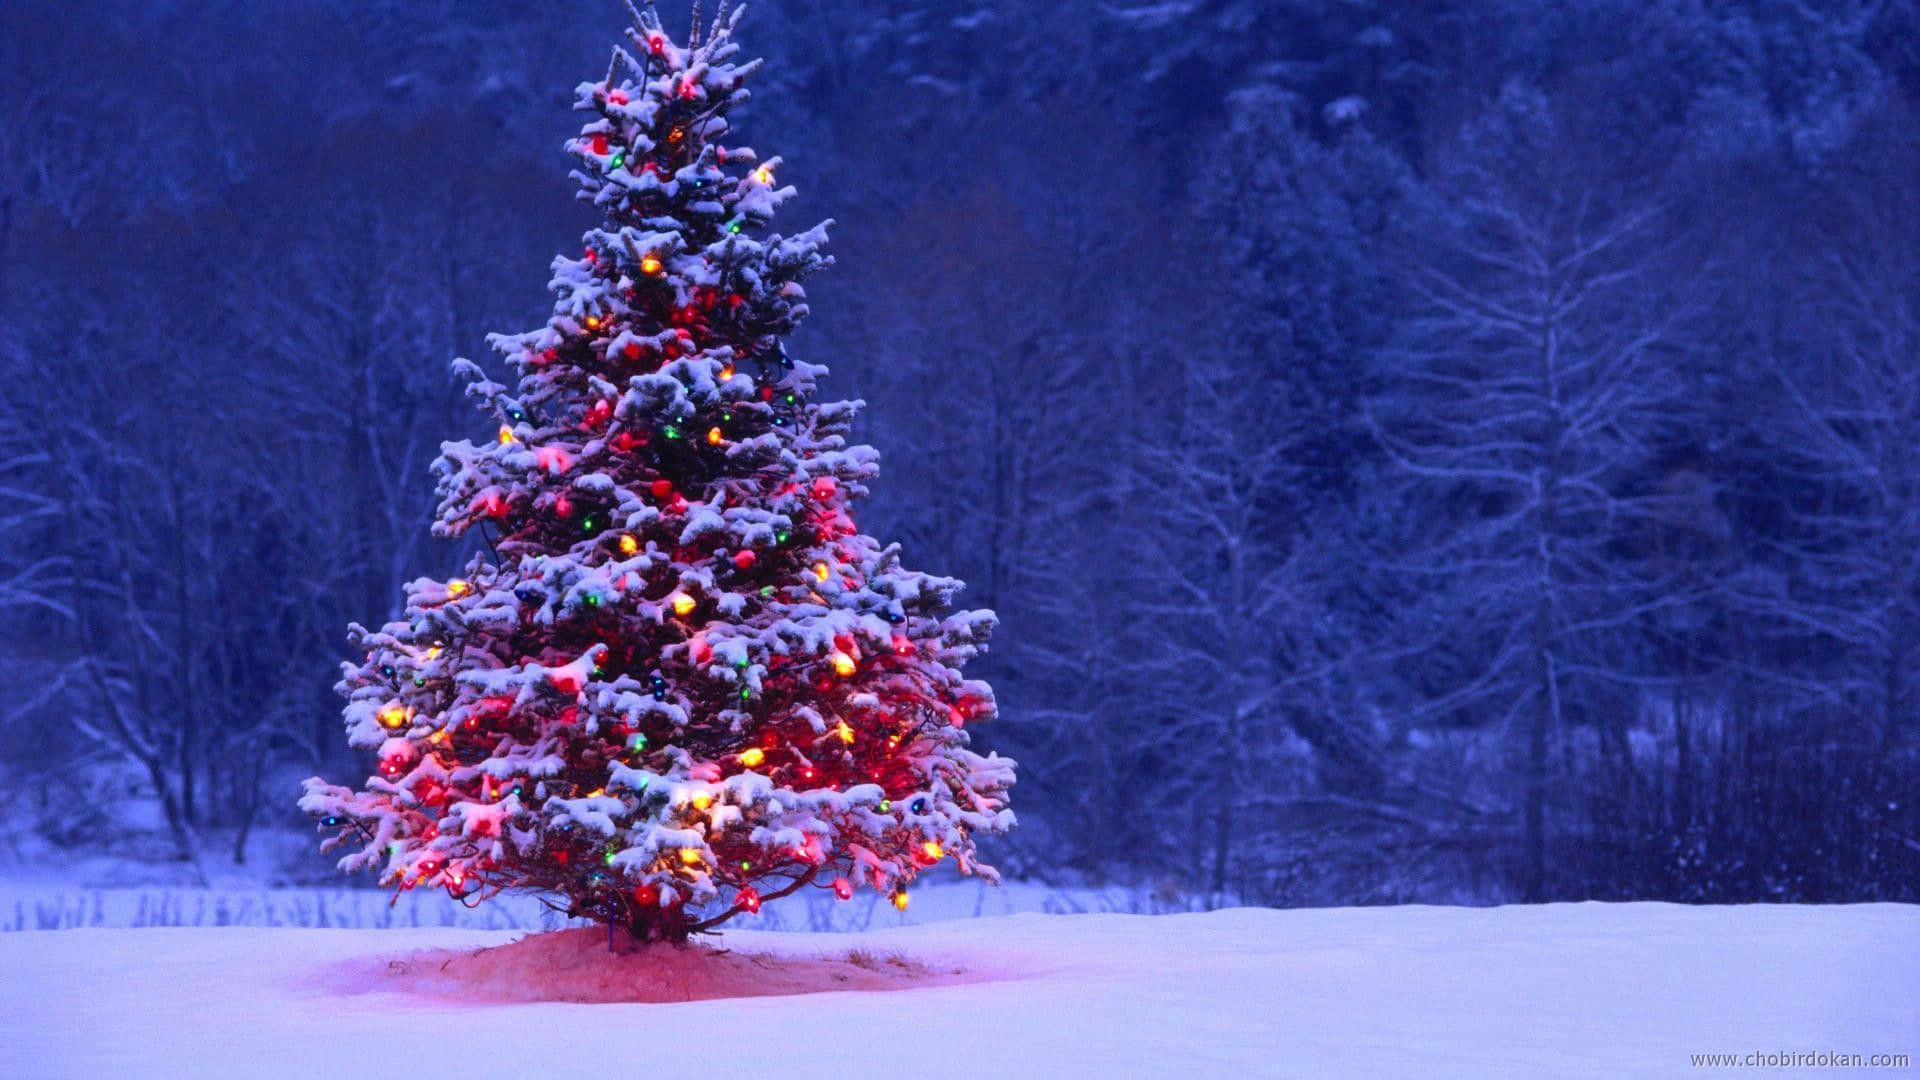 Feiernsie Die Festliche Jahreszeit Mit Einer Verschneiten Weihnachtslandschaft.